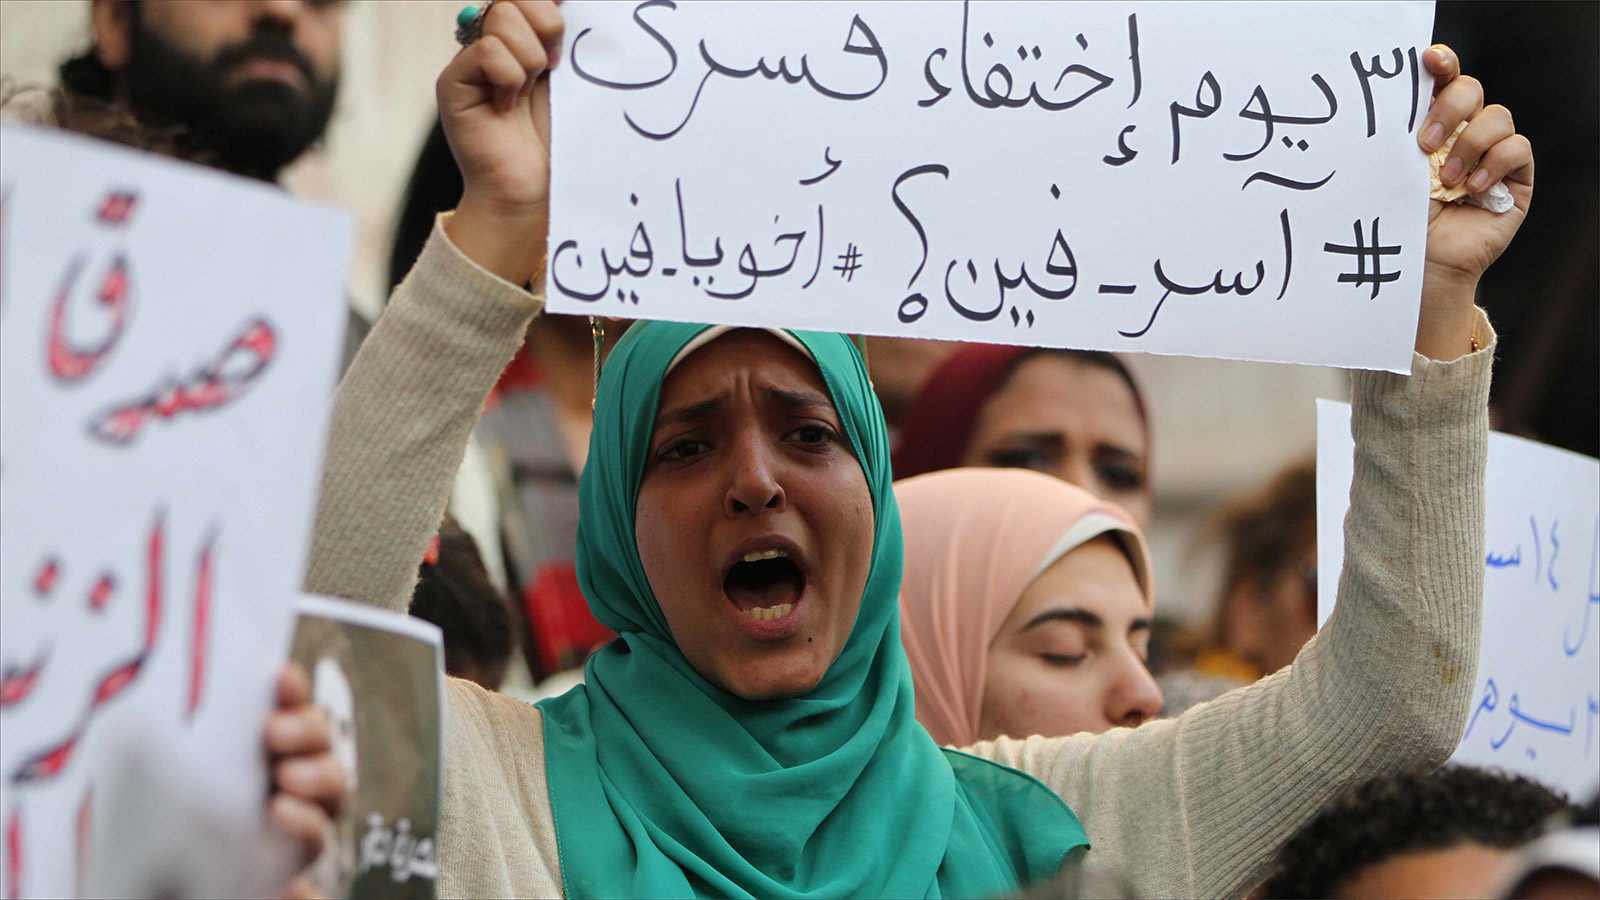 مصر تحتل مرتبة متأخرة في هامش الحريات وفق مؤشرات عالمية (الجزيرة)